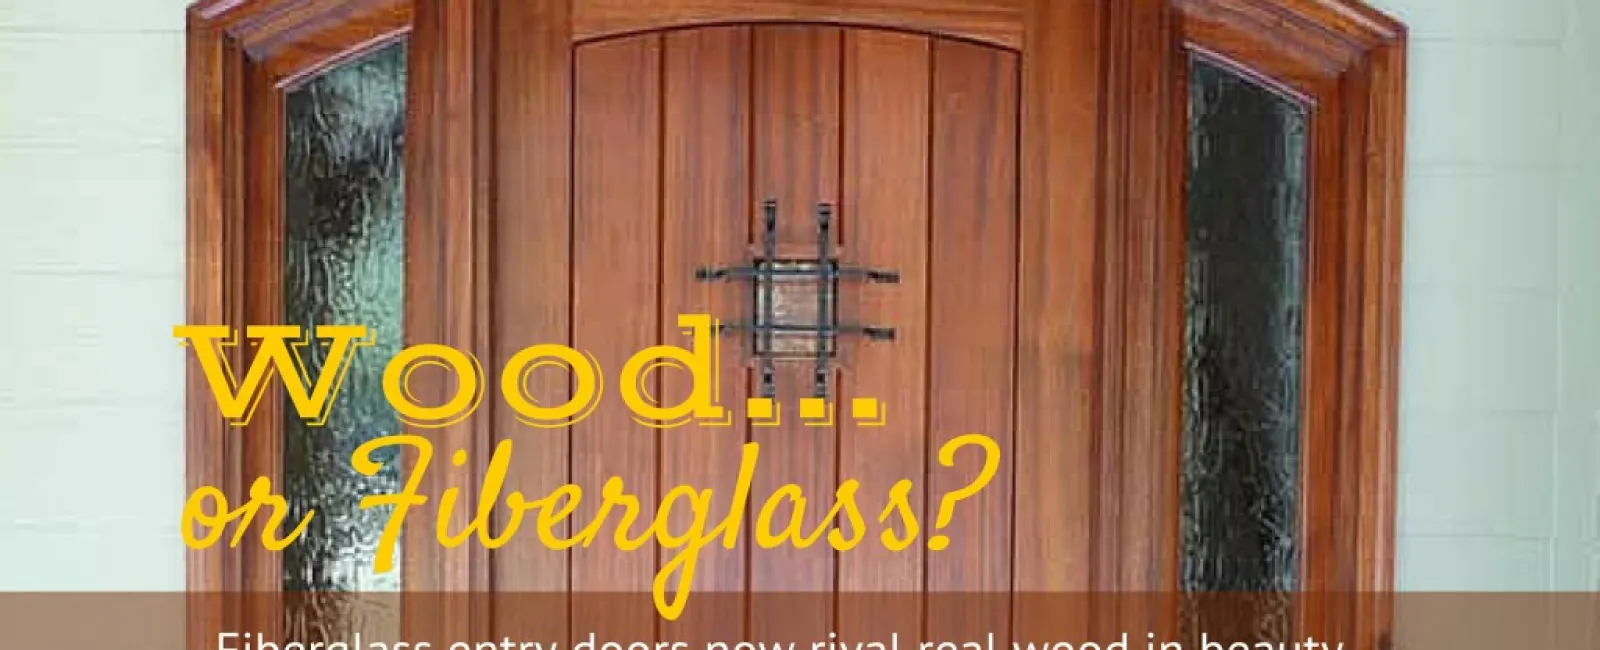 WHY SHOULD I CHOOSE A FIBERGLASS ENTRY DOOR VERSUS A WOOD ENTRY DOOR?